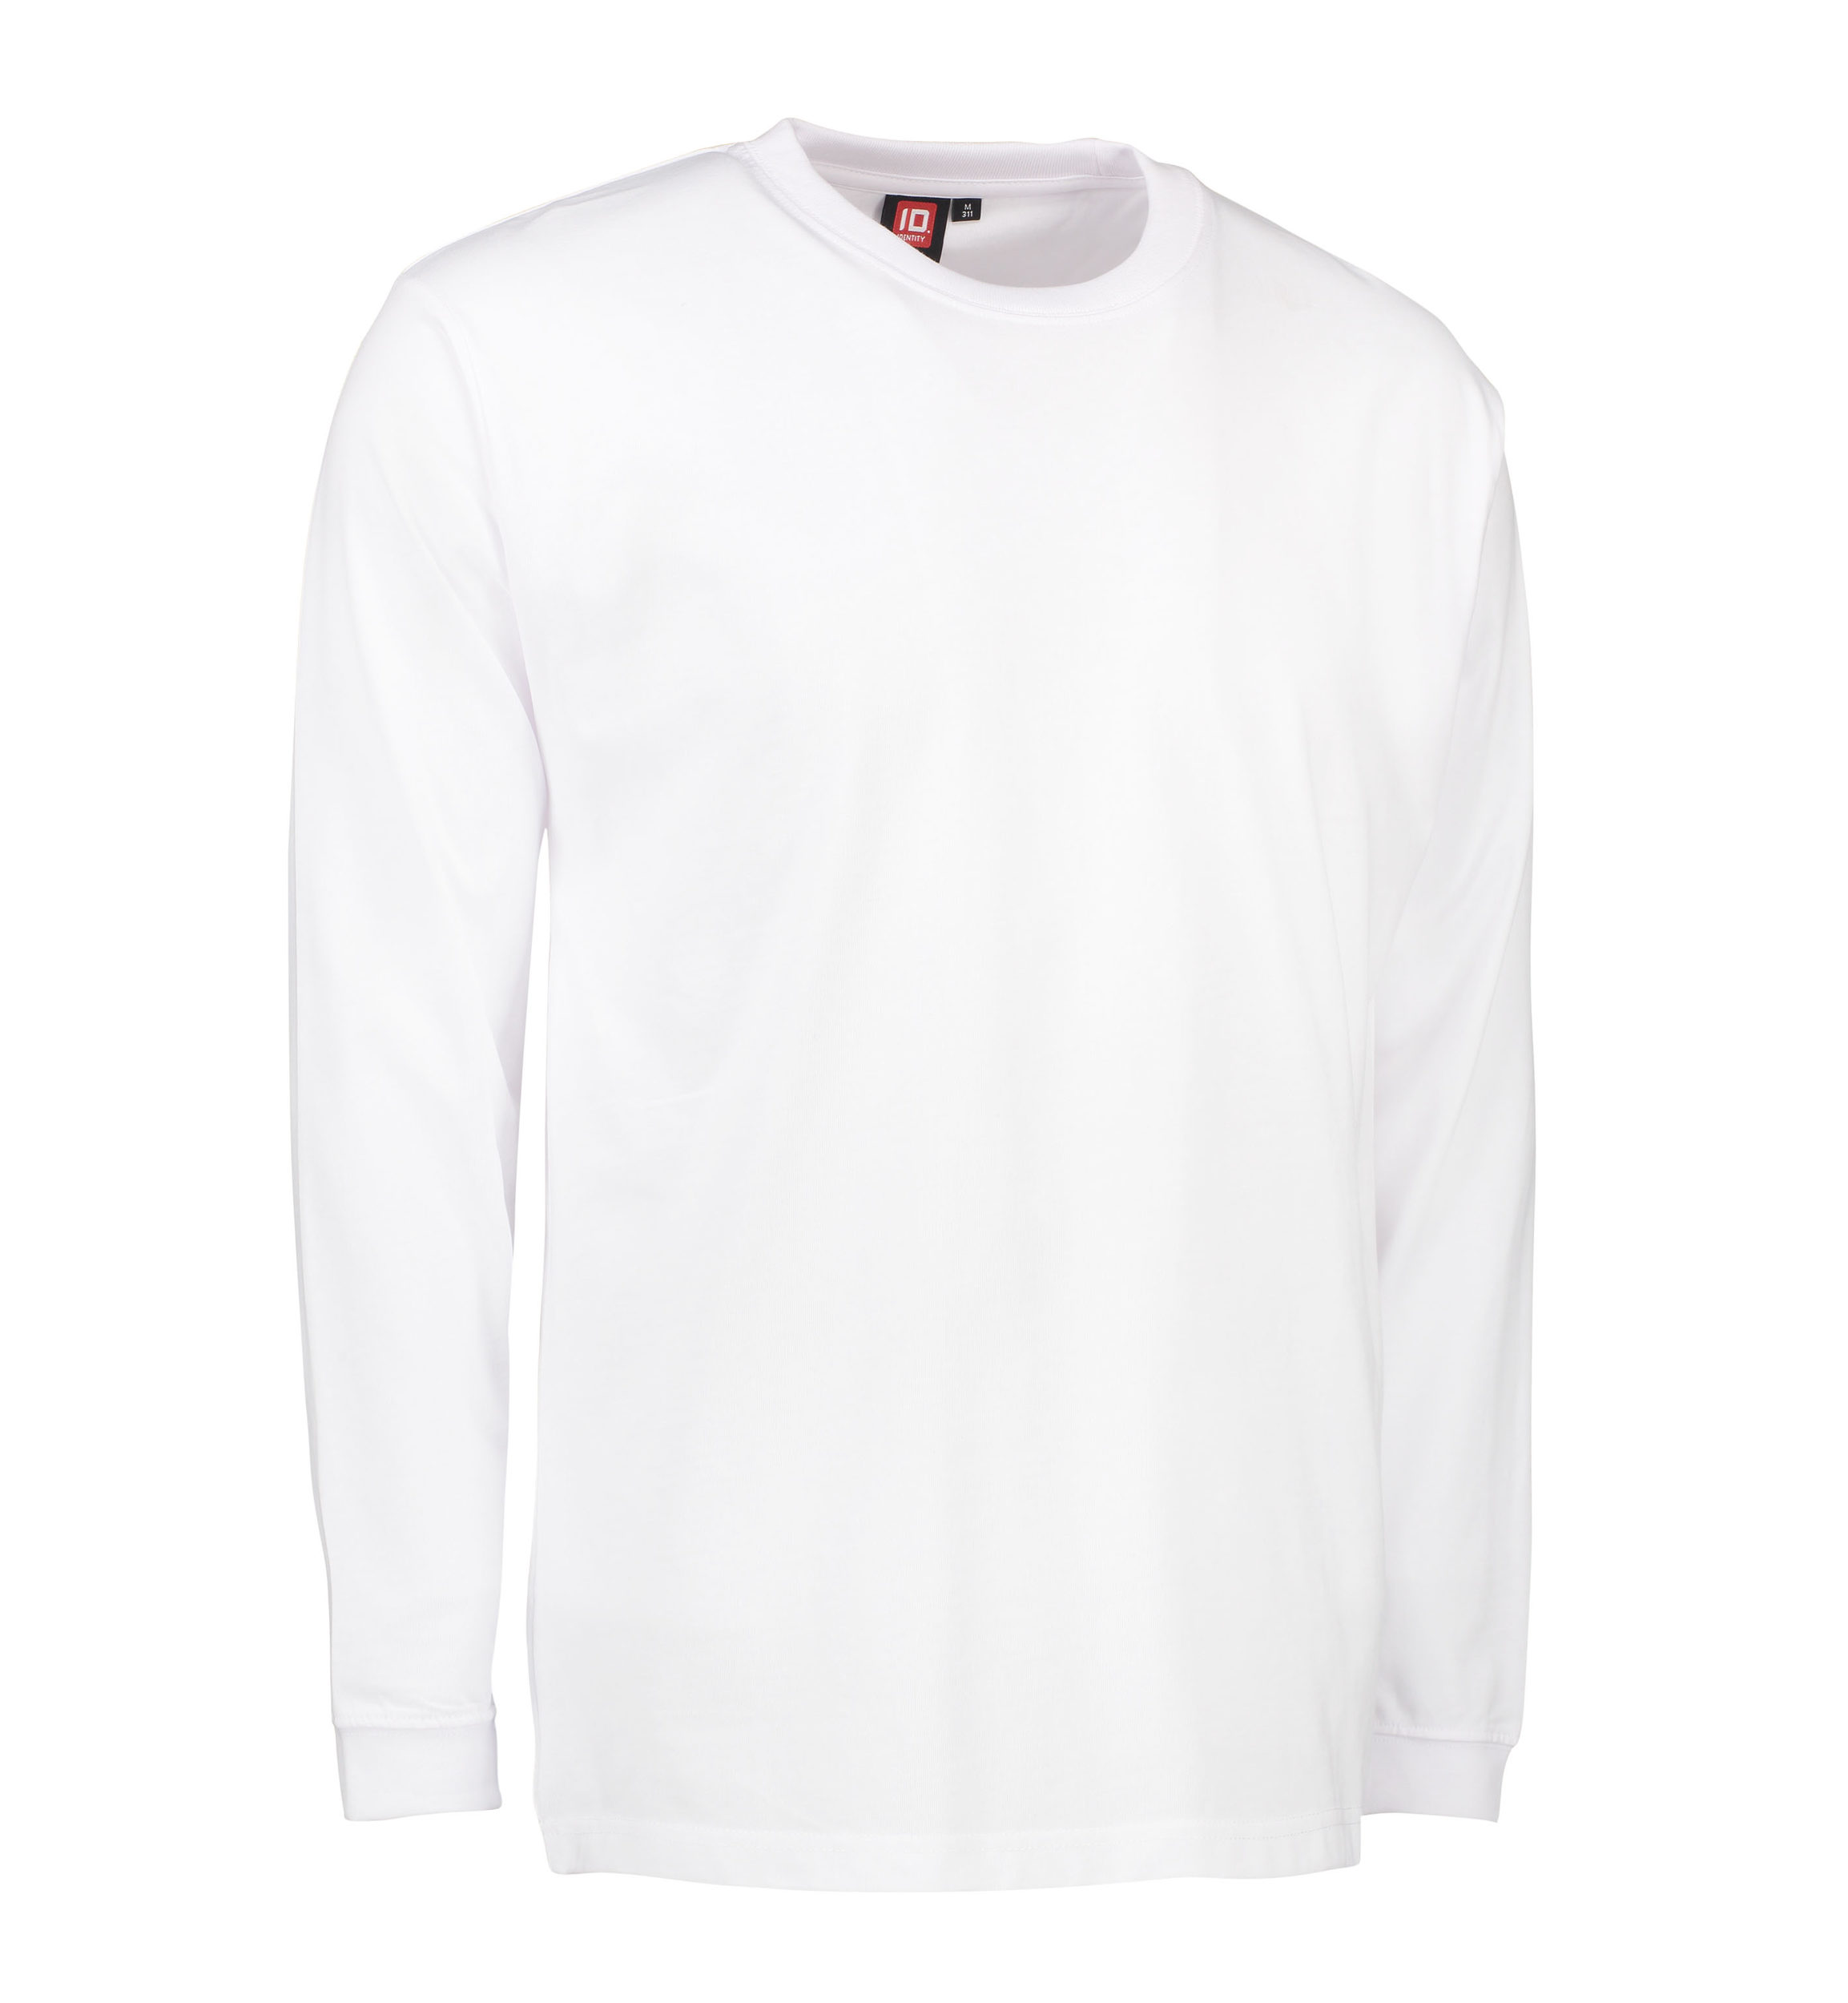 Billede af Slidstærk langærmet t-shirt til mænd i hvid - M hos Sygeplejebutikken.dk